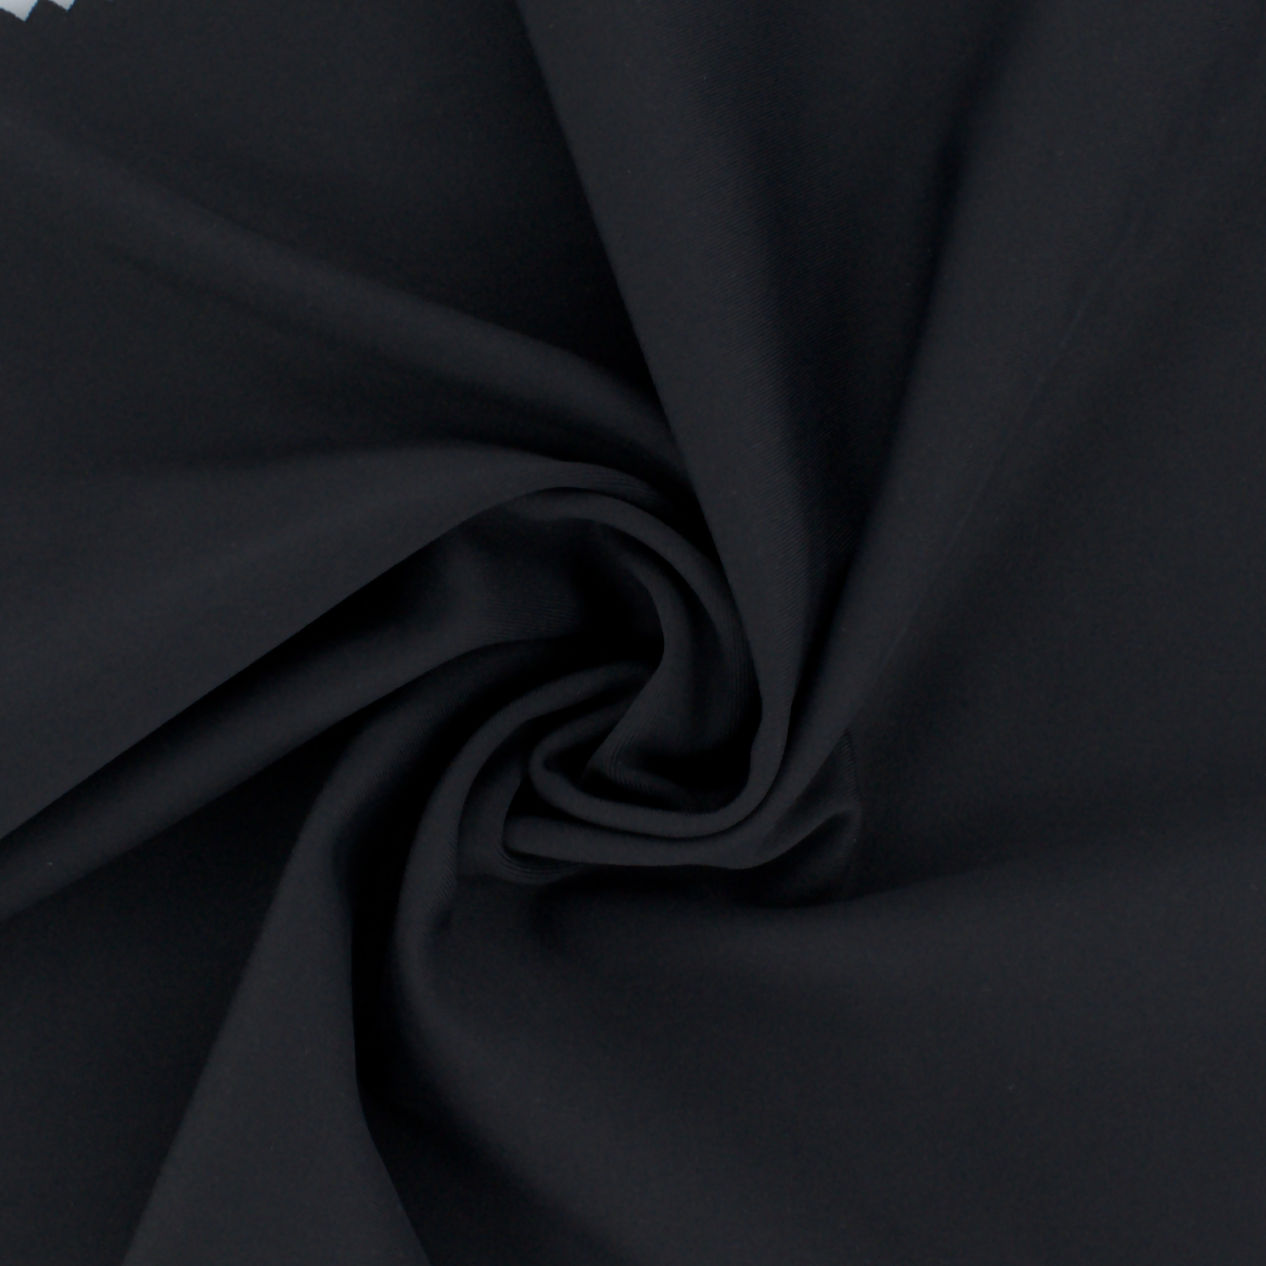 Yakapfava Yakareruka Yakareruka Interlock elastane uye polyester Fabric